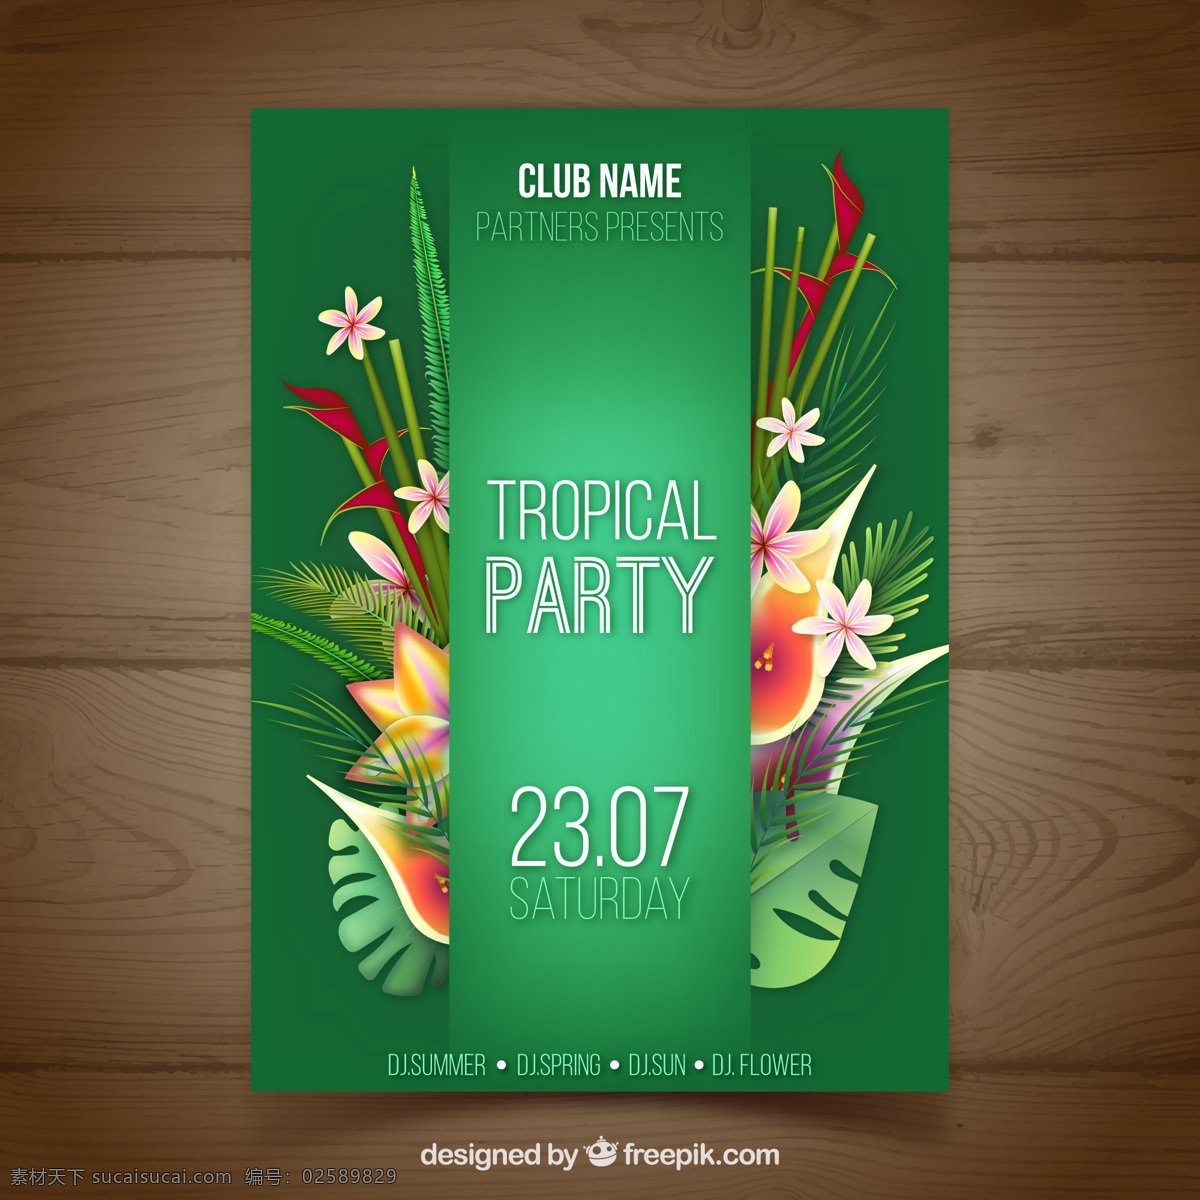 花 热带 派对 优雅 绿色 叶 花卉 音乐 模板 树叶 小册子 传单 海报 自然 宣传册模板 党的海报 庆典 活动 节日